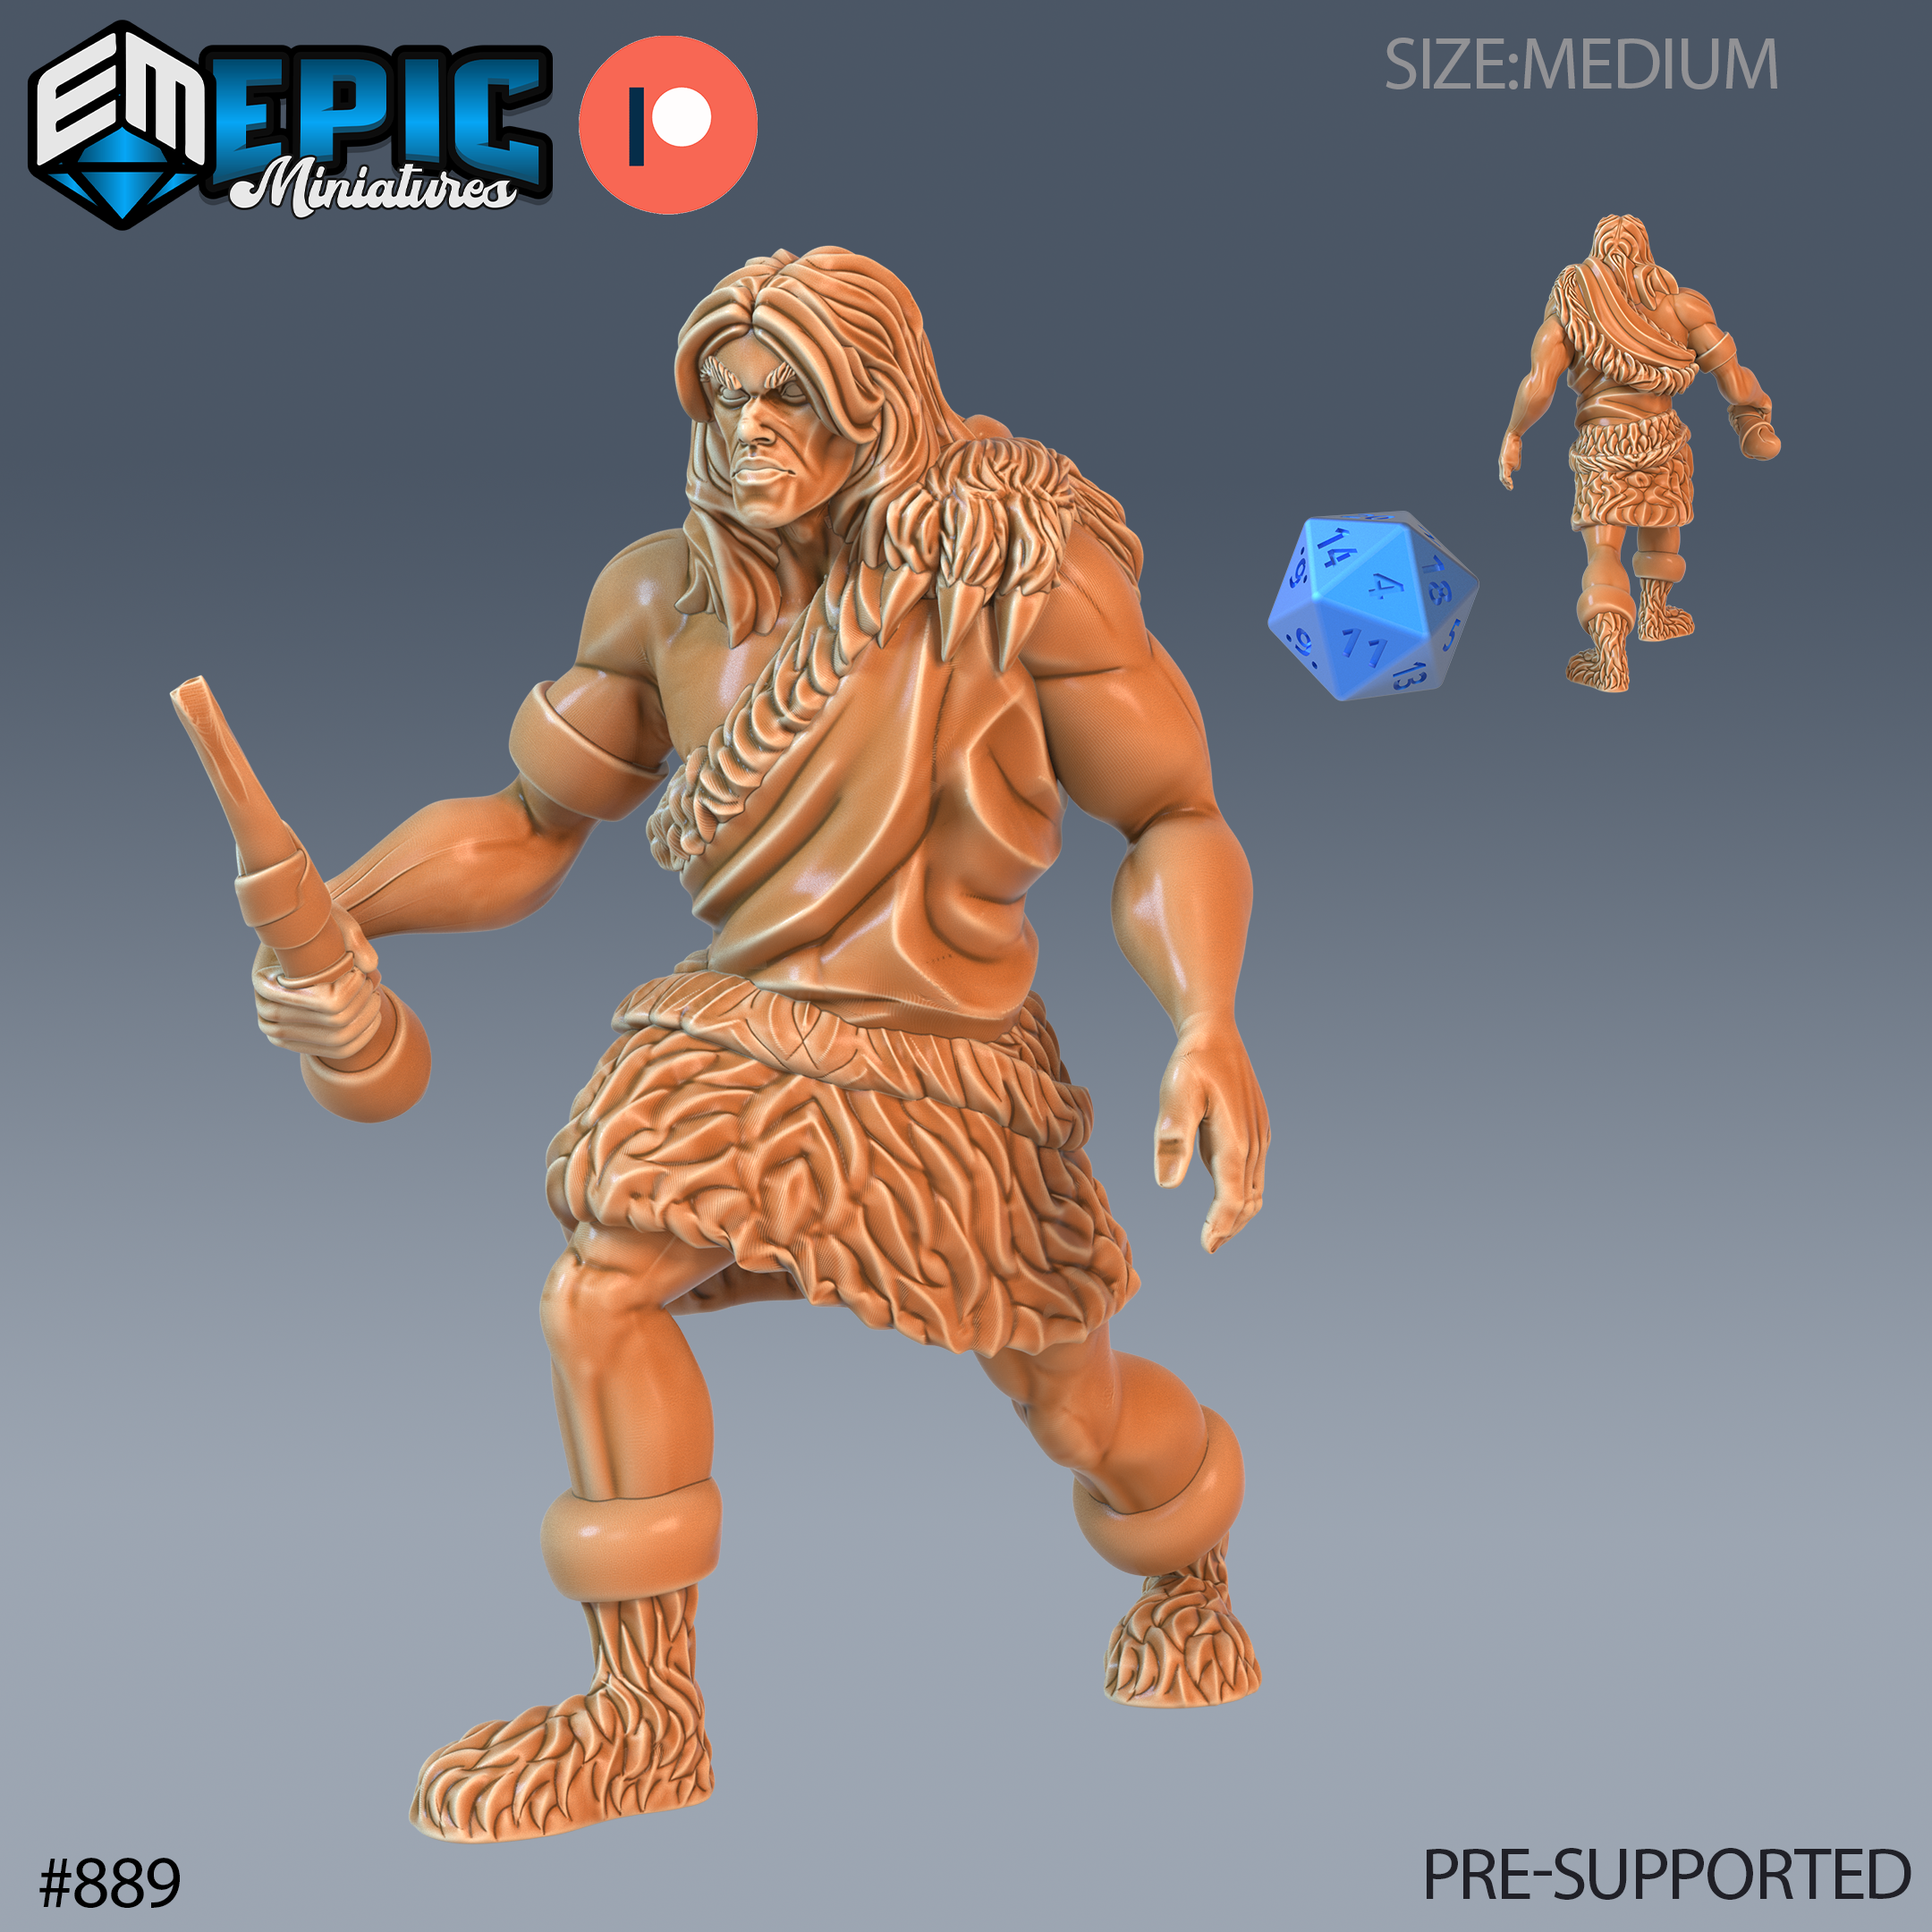 Caveman Prehistoric Primitive Human